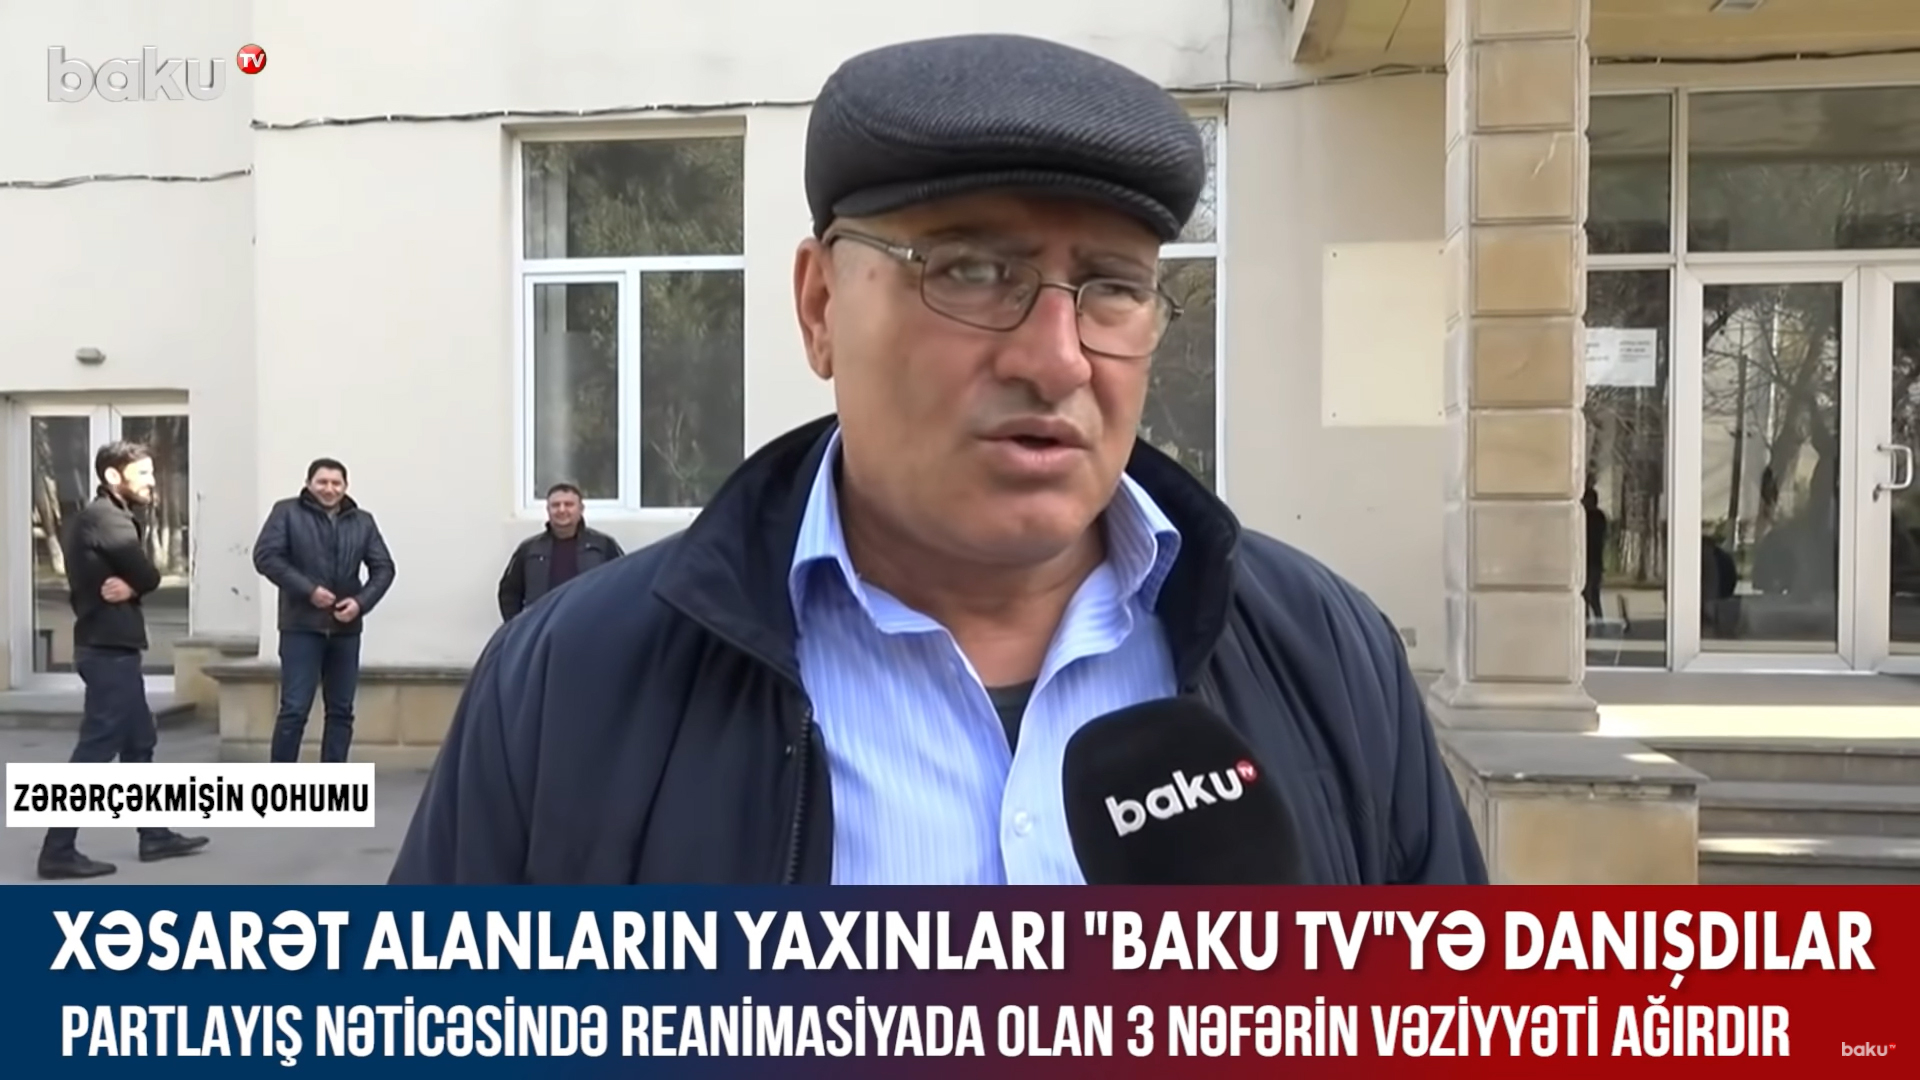 Baku TV побеседовало с родственниками пострадавших при взрыве в ночном клубе - ВИДЕО